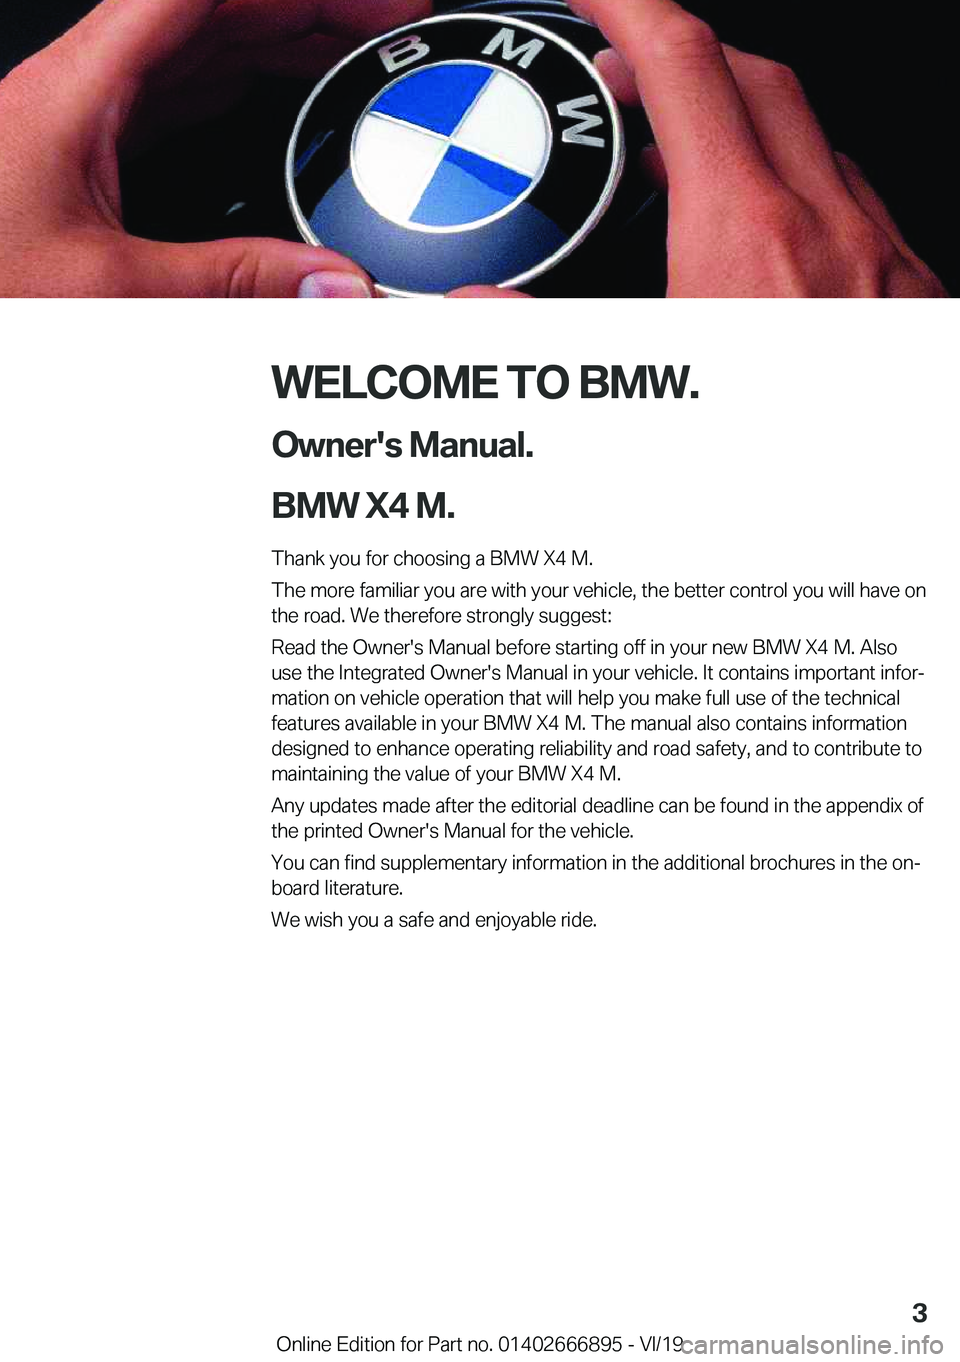 BMW X4 M 2020  Owners Manual �W�E�L�C�O�M�E��T�O��B�M�W�.�O�w�n�e�r�'�s��M�a�n�u�a�l�.
�B�M�W��X�4��M�.
�T�h�a�n�k��y�o�u��f�o�r��c�h�o�o�s�i�n�g��a��B�M�W��X�4��M�.
�T�h�e��m�o�r�e��f�a�m�i�l�i�a�r��y�o�u��a�